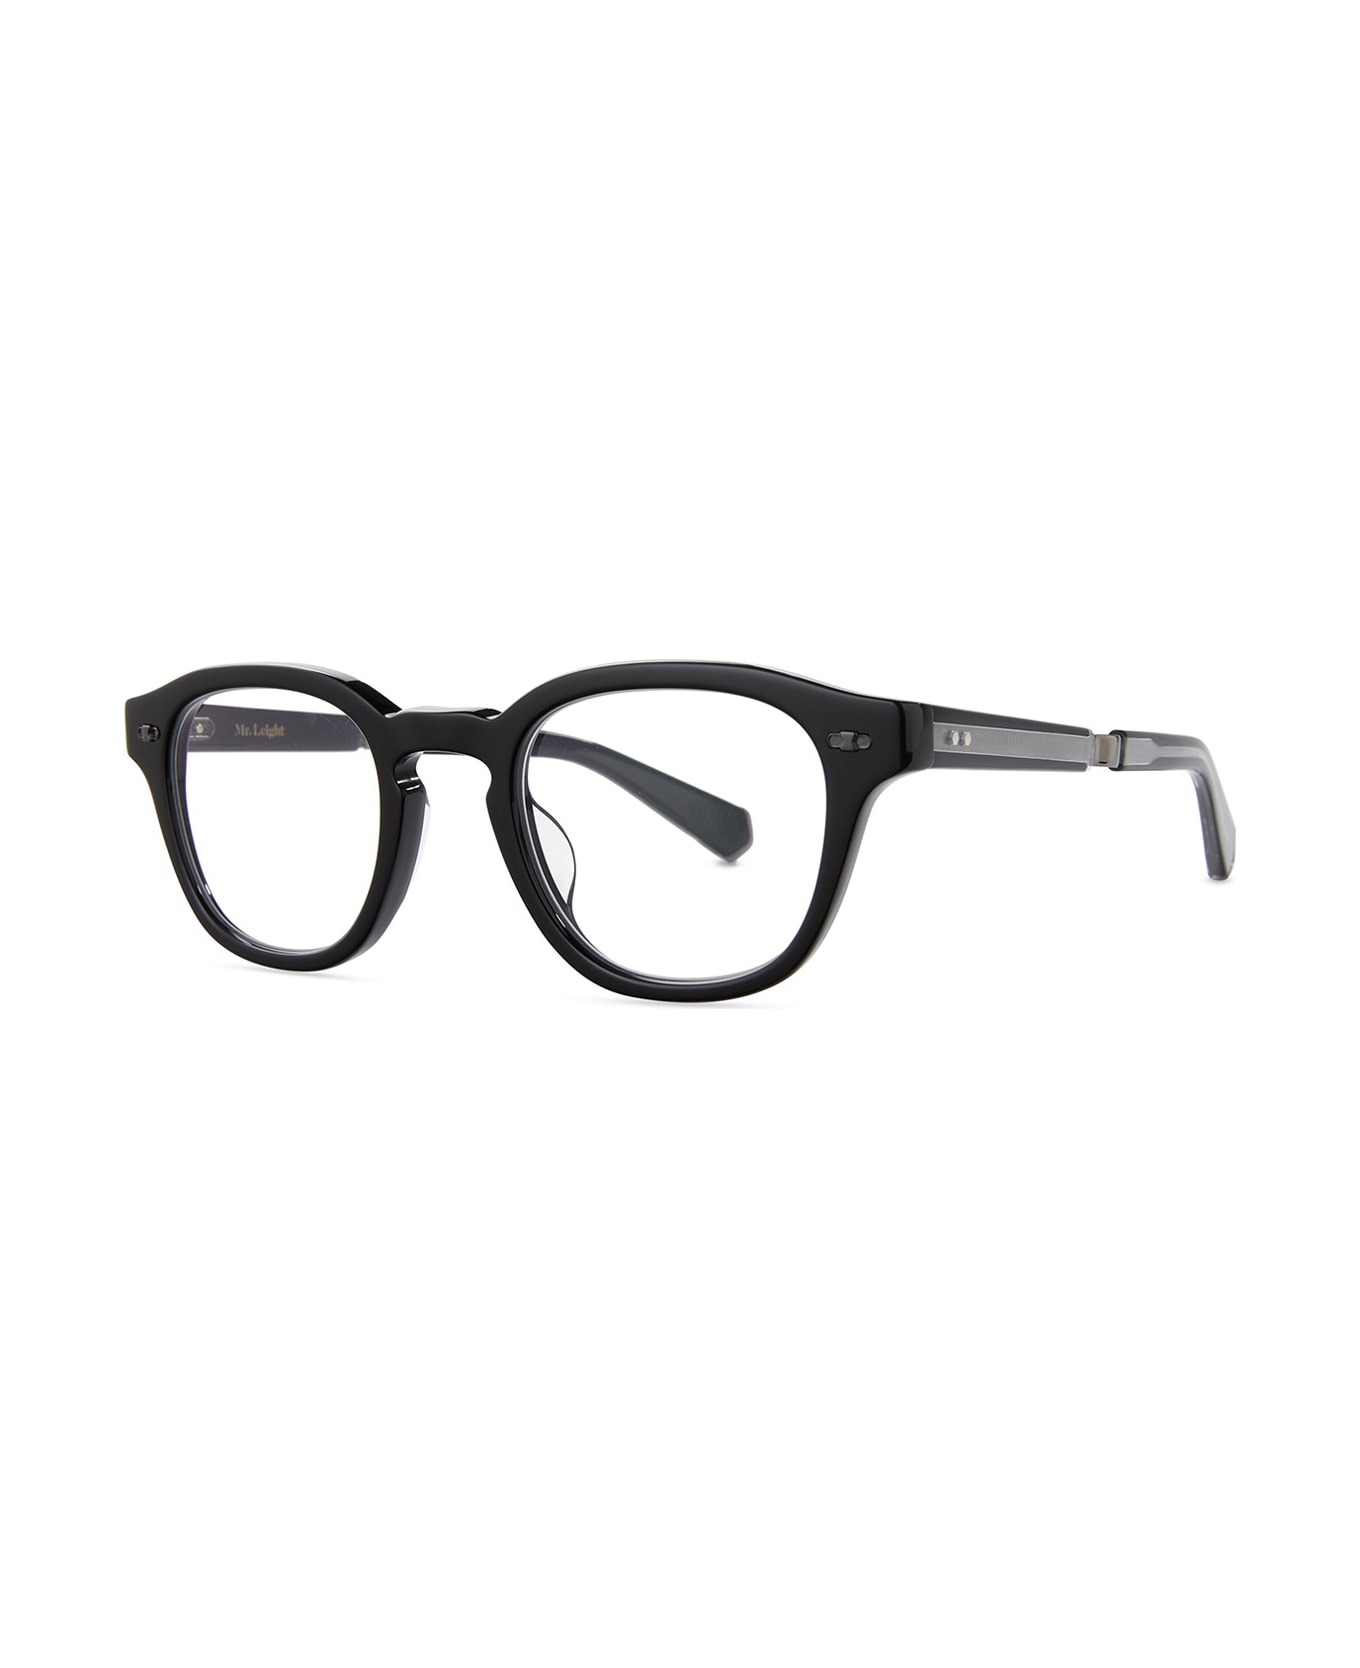 Mr. Leight James C Black-gunmetal Glasses - Black-Gunmetal アイウェア